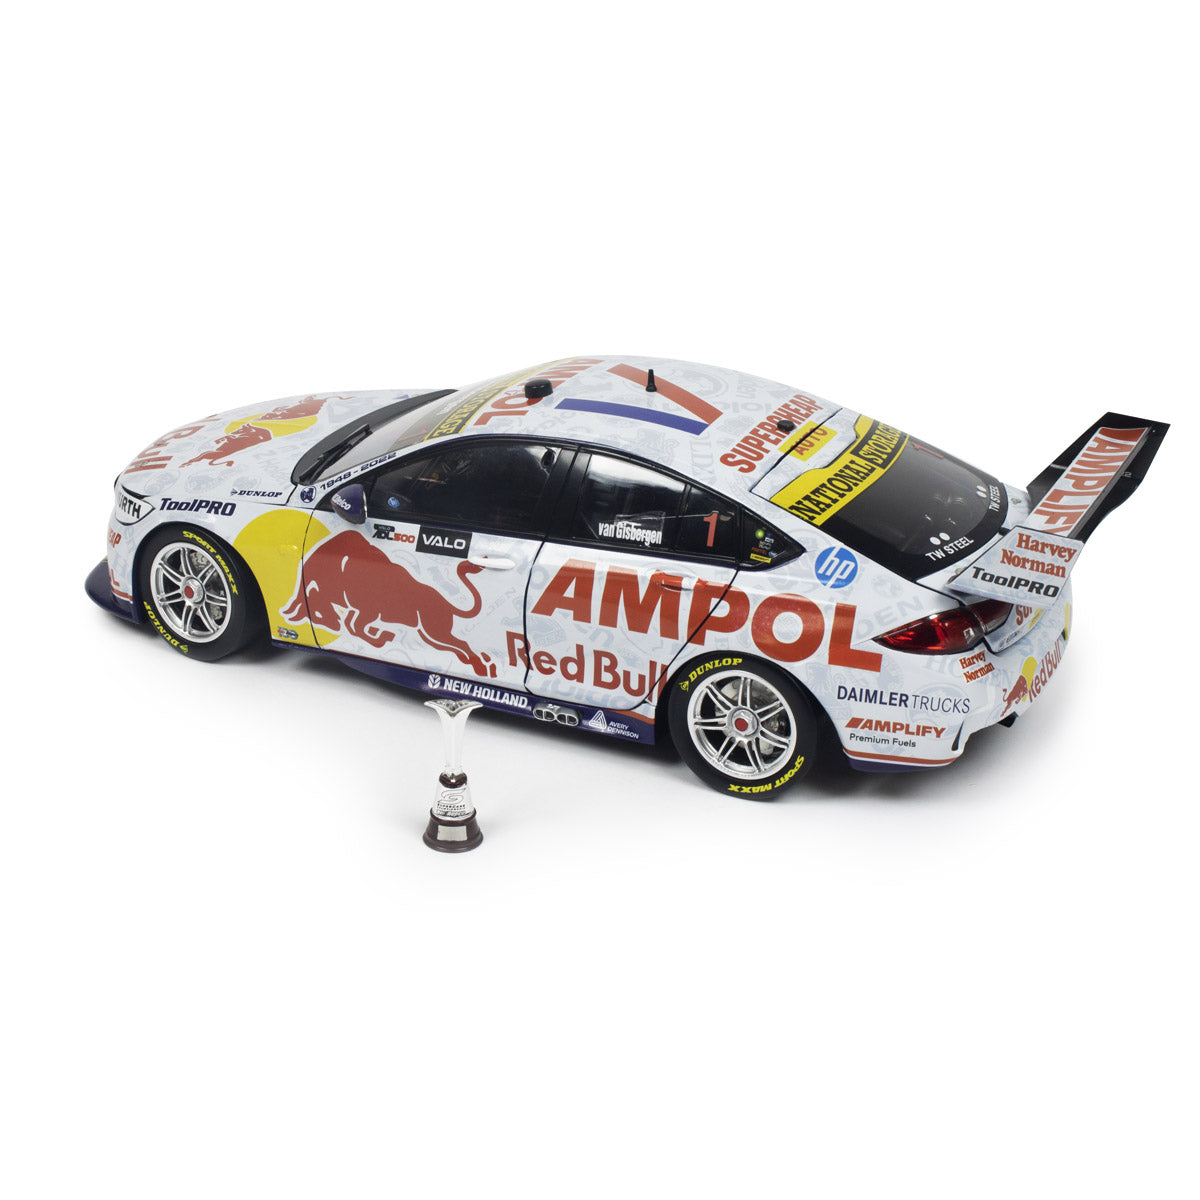 Holden ZB Commodore - Red Bull Ampol Racing - van Gisbergen #1 - 2022 Valo Adelaide 500 Championship Winner